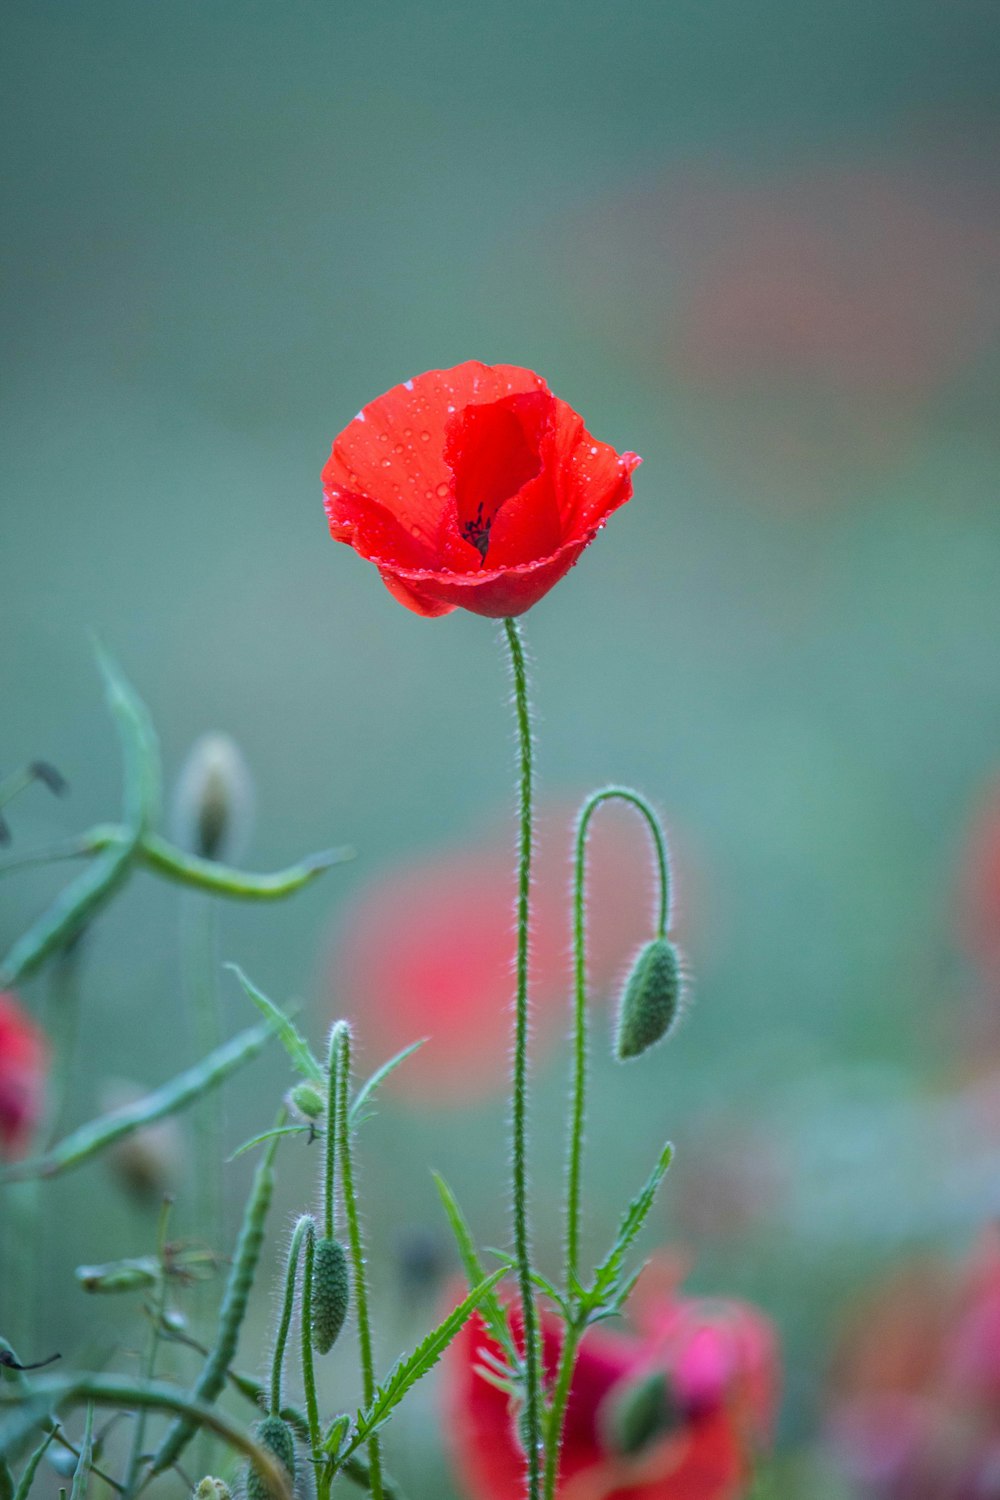 photographie en gros plan de fleur à pétales rouges